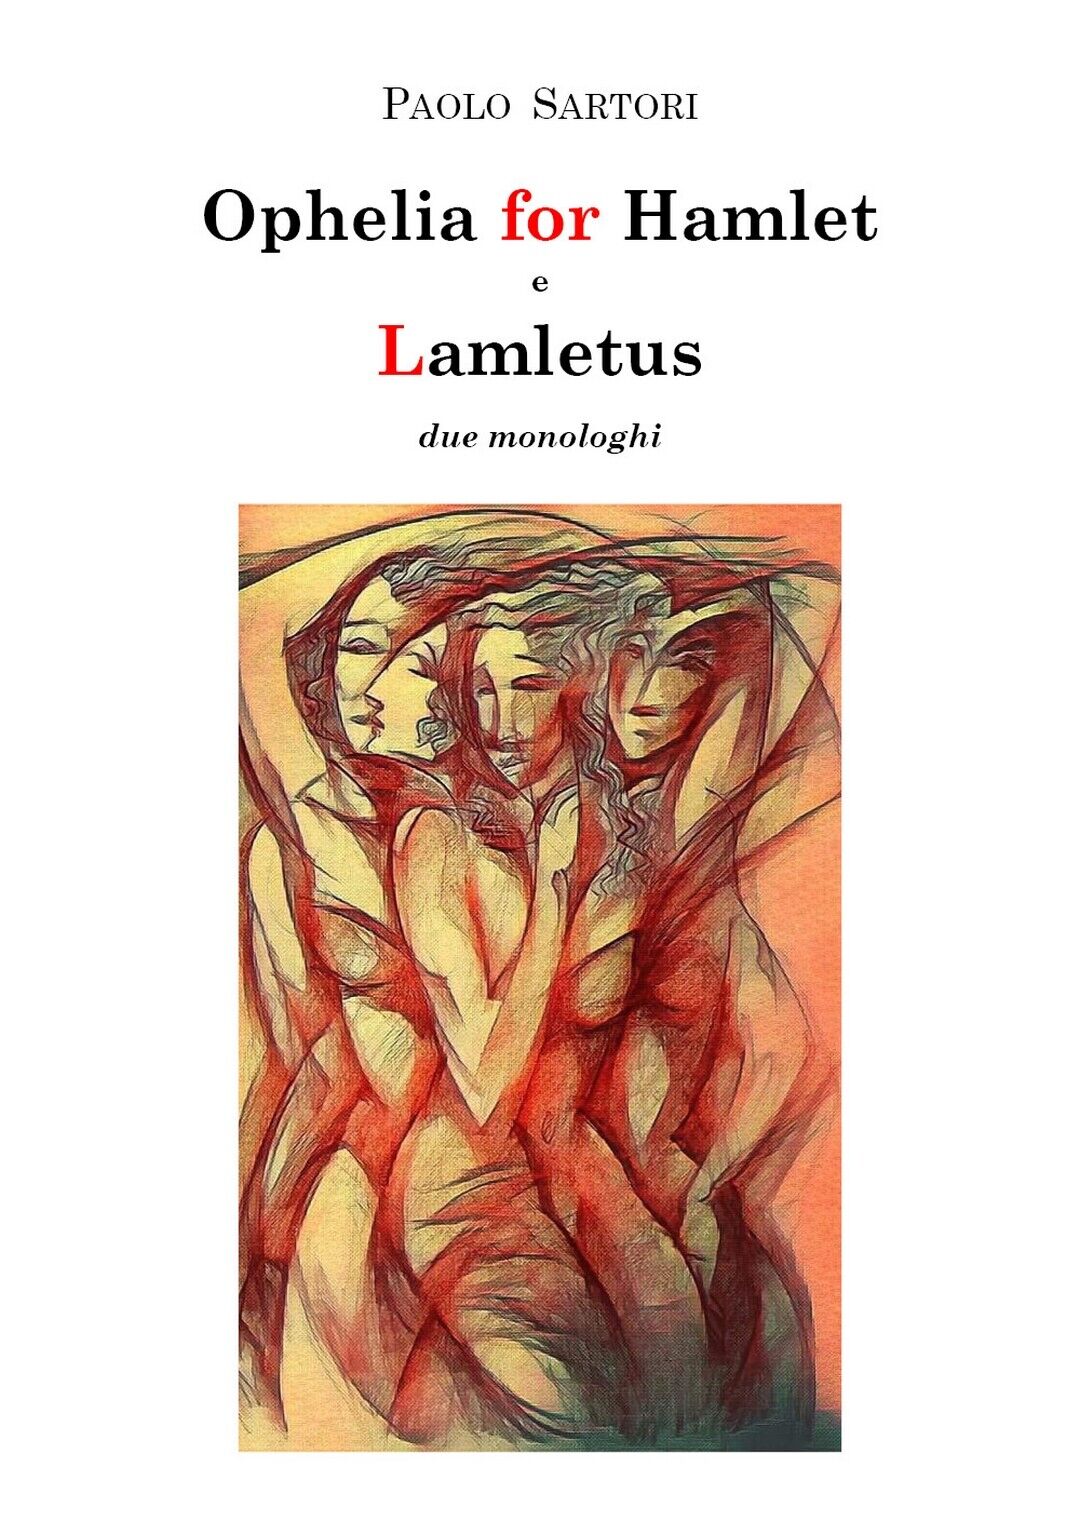 Ophelia for Hamlet e Lamletus due monologhi, Paolo Sartori,  2020,  Youcanprint libro usato